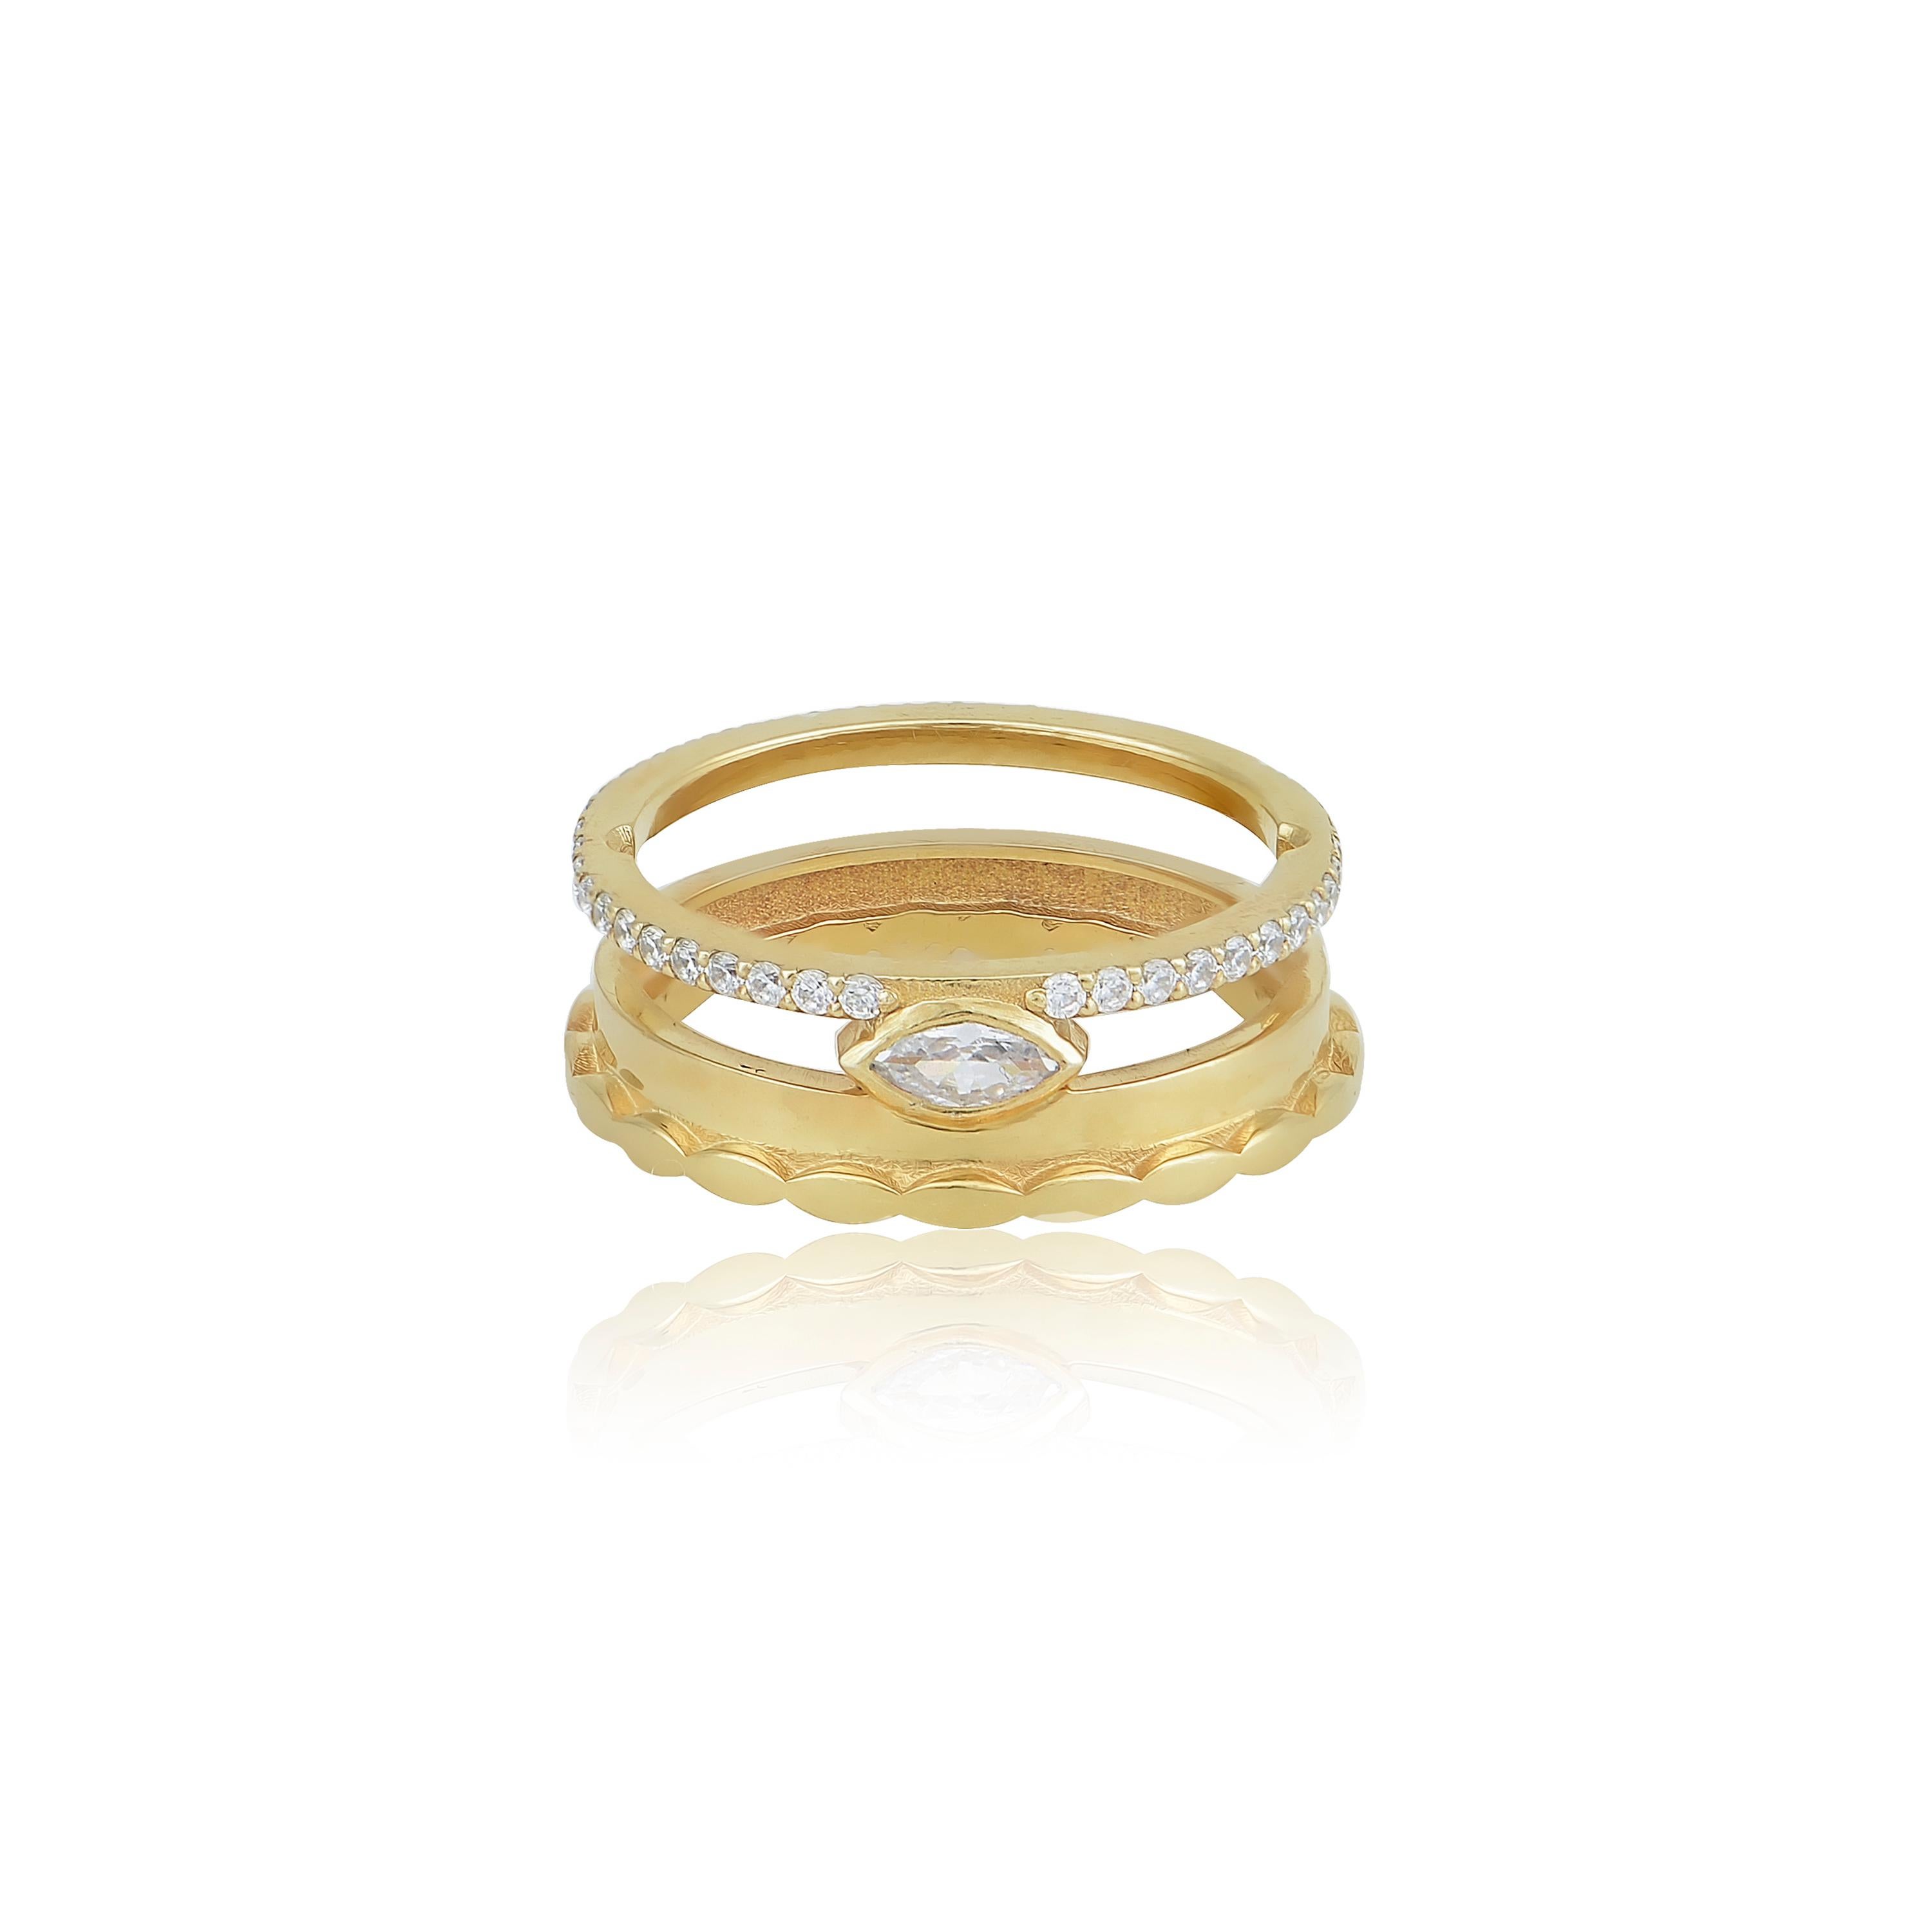 Designer: Alexia Gryllaki
Abmessungen: 7x22mm
Ring Größe UK M 1/2 US 6 1/2
Gewicht: ca. 5,6 g  
Barcode: NEX4004

Ring mit Marquise-Muster aus 18 Karat Gelbgold mit farblosen Diamanten im Marquise- und runden Brillantschliff (ca. 0,60cts).

Der Ring